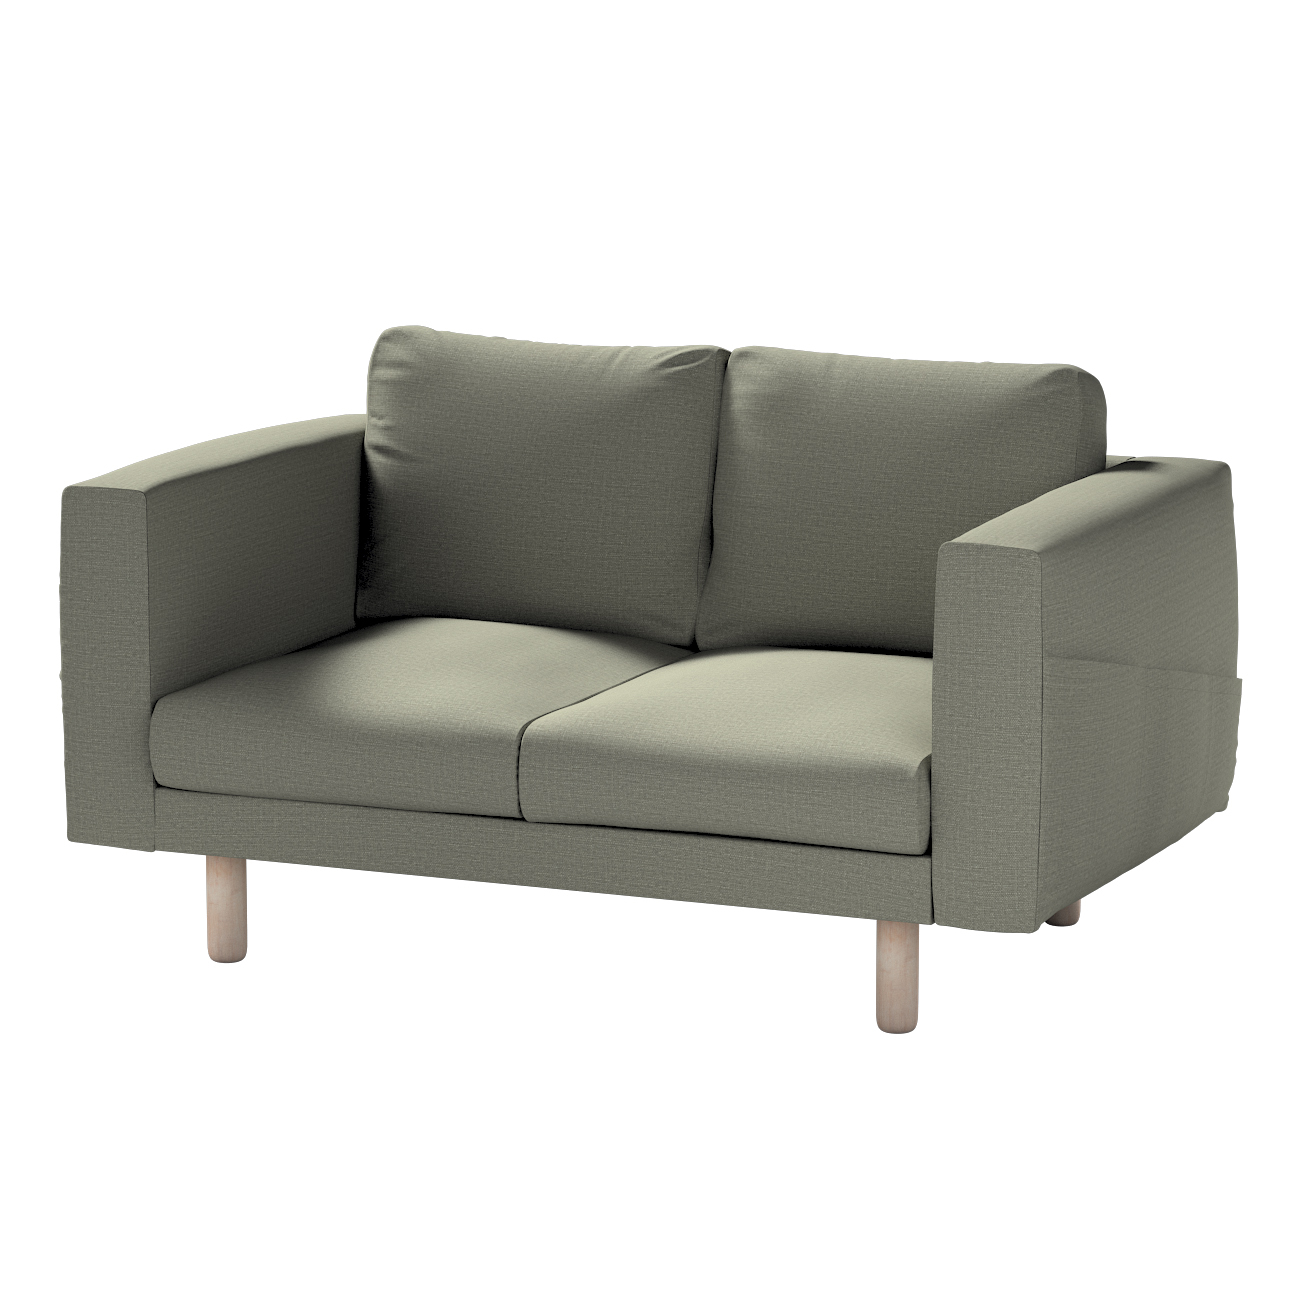 Bezug für Norsborg 2-Sitzer Sofa, grau-beige, Norsborg 2-Sitzer Sofabezug, günstig online kaufen